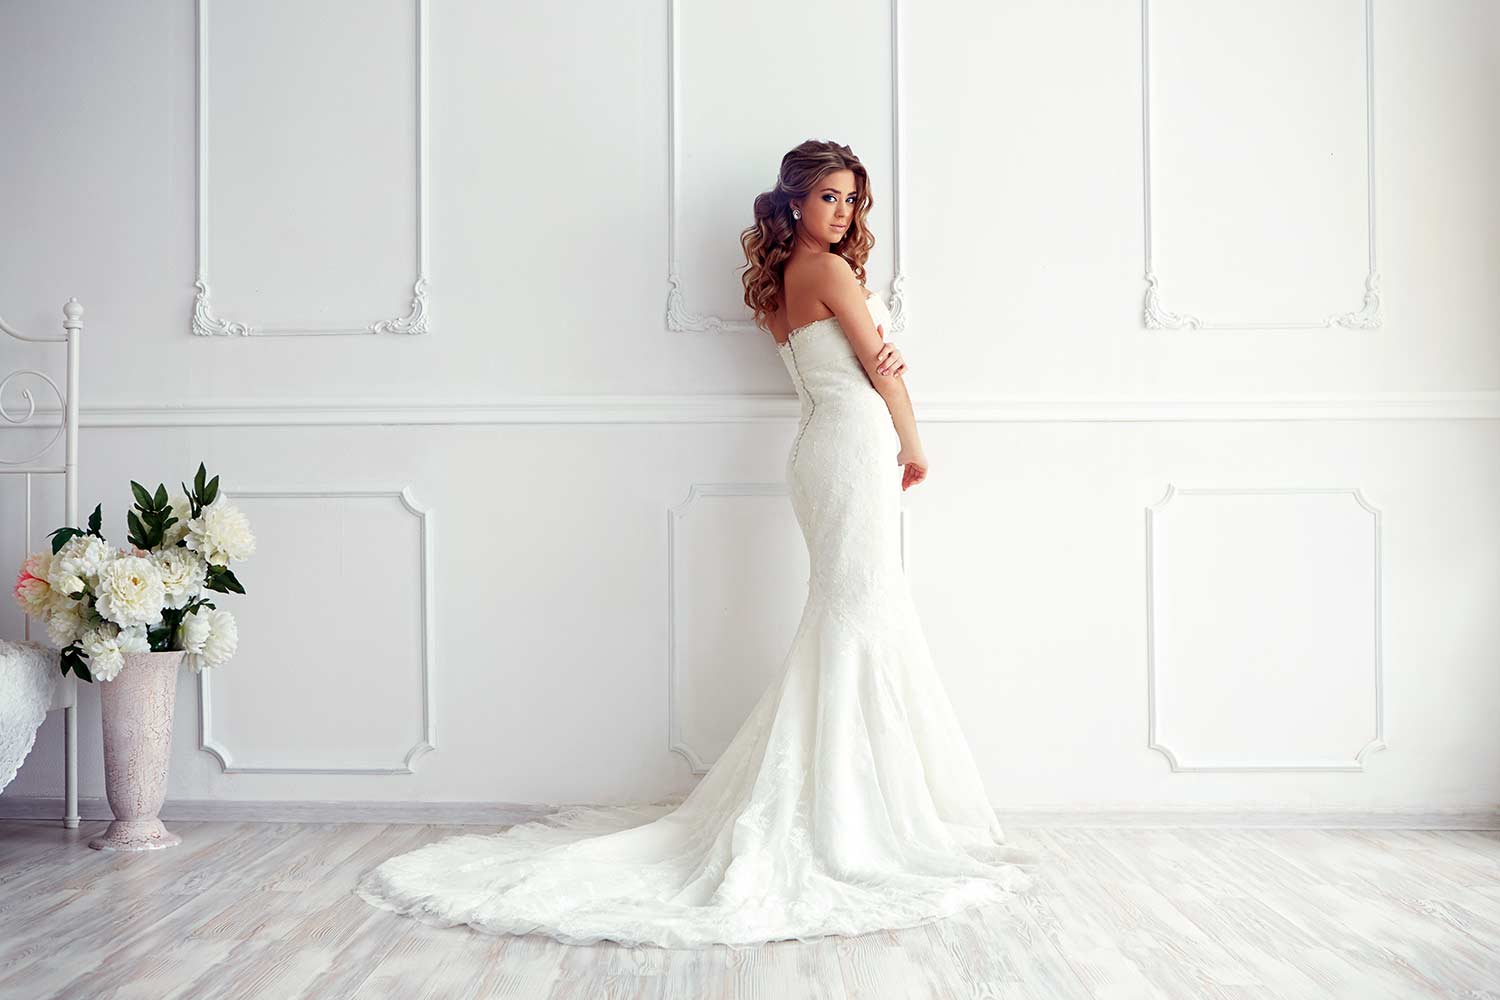 Lace Wedding Dresses: 36 Looks + Expert Tips  Hochzeit kleidung, Kleider  hochzeit, Hochzeitskleid